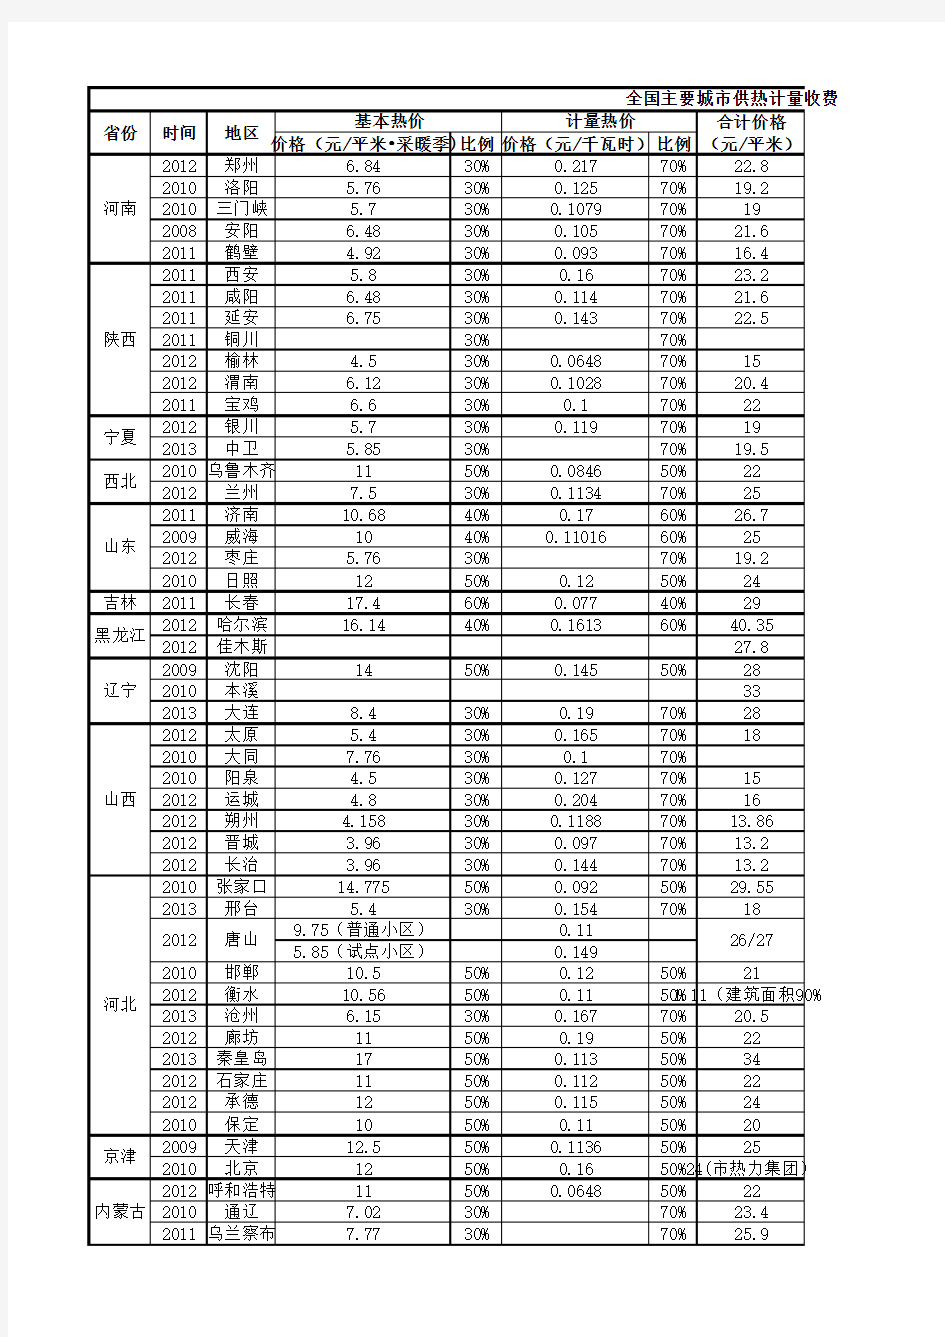 主要城市供热计量收费标准表(2008-2013)